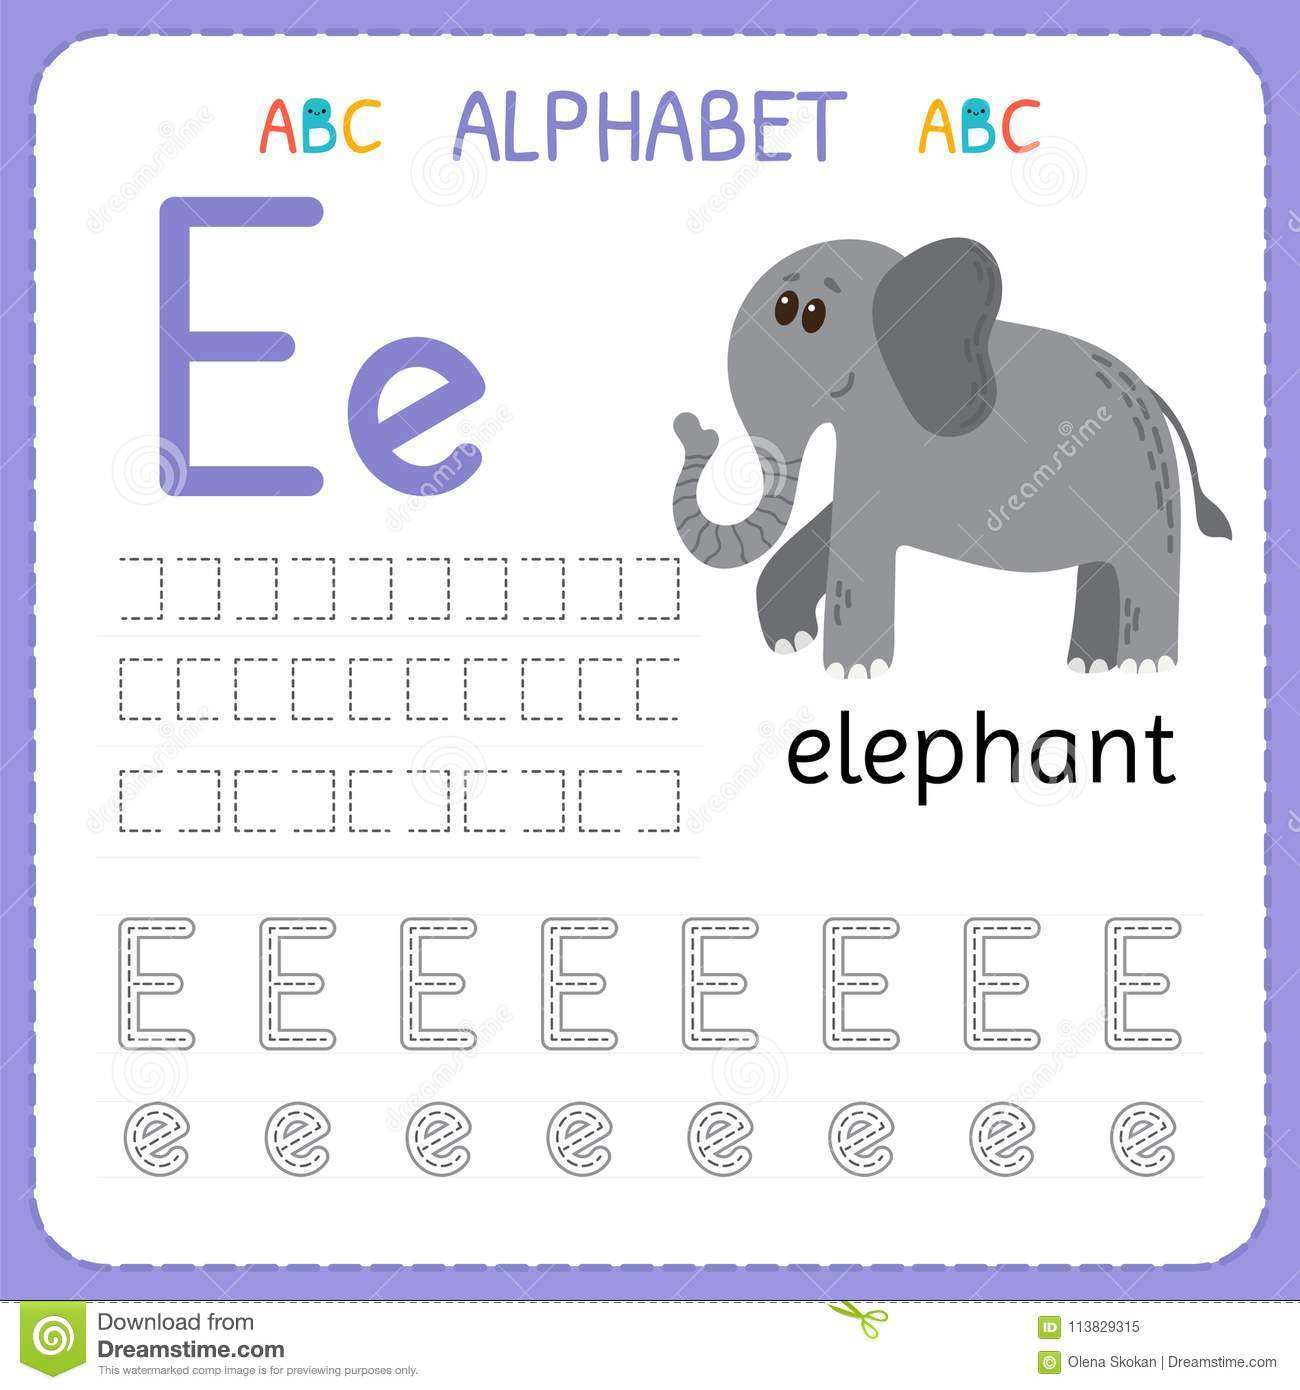 Alphabet Tracing Worksheet For Preschool And Kindergarten in Alphabet Tracing Guide